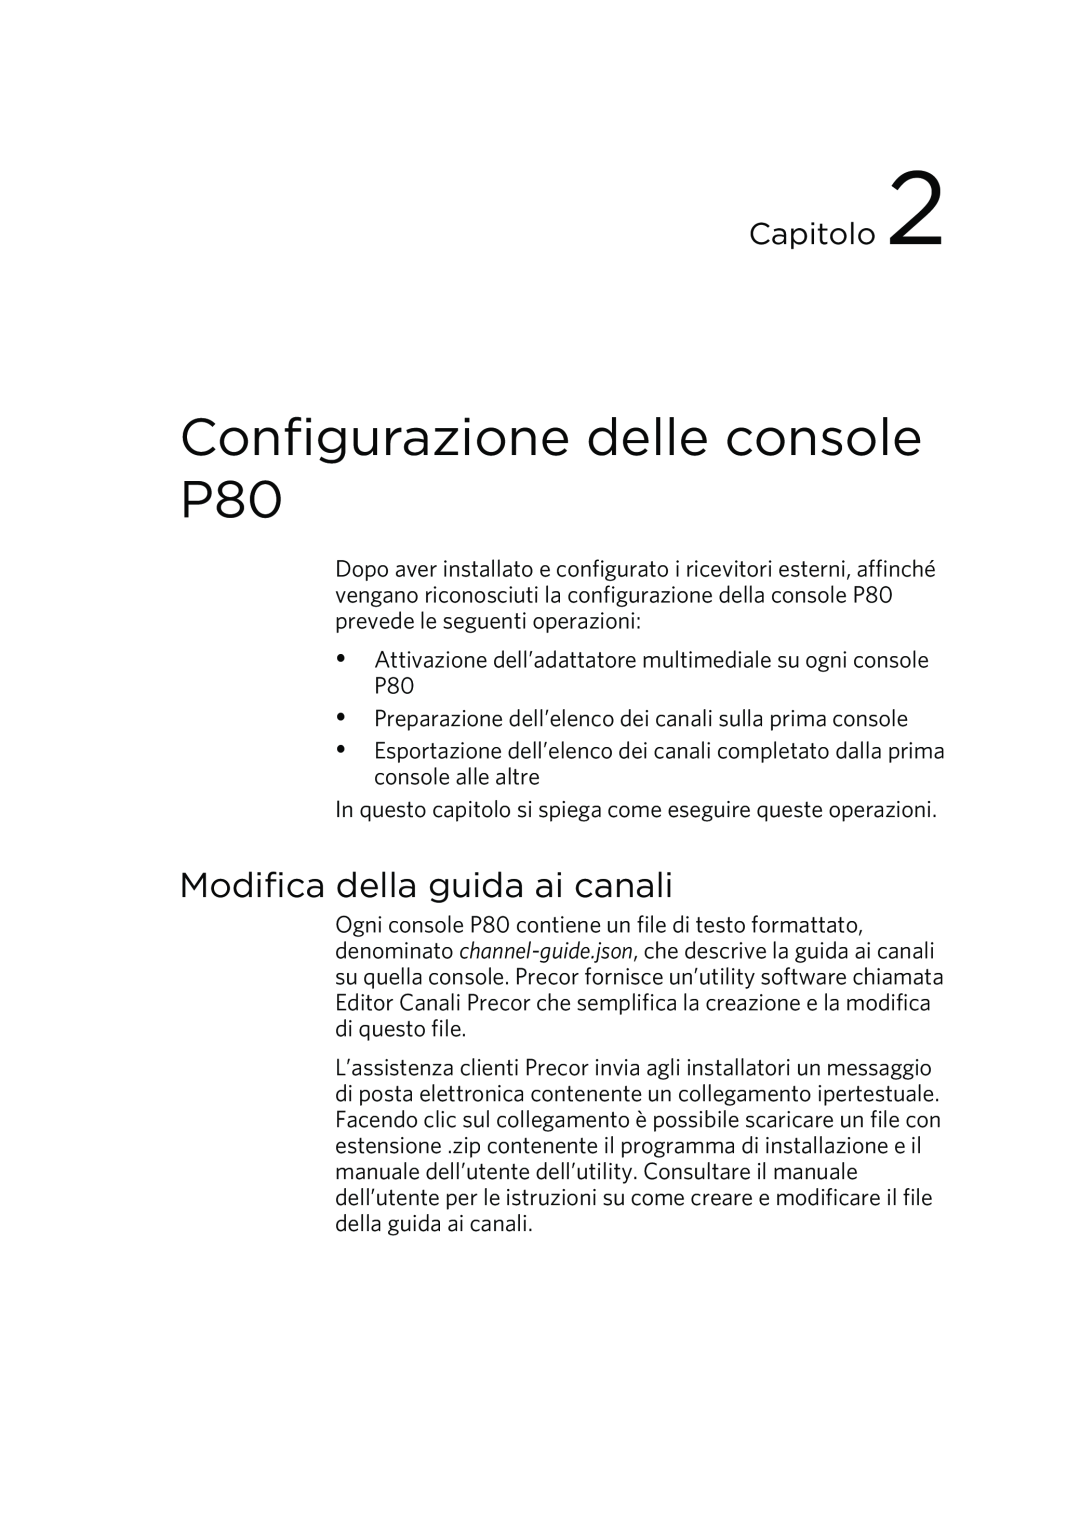 Precor manual Configurazione delle console P80, Modifica della guida ai canali, Capitolo 